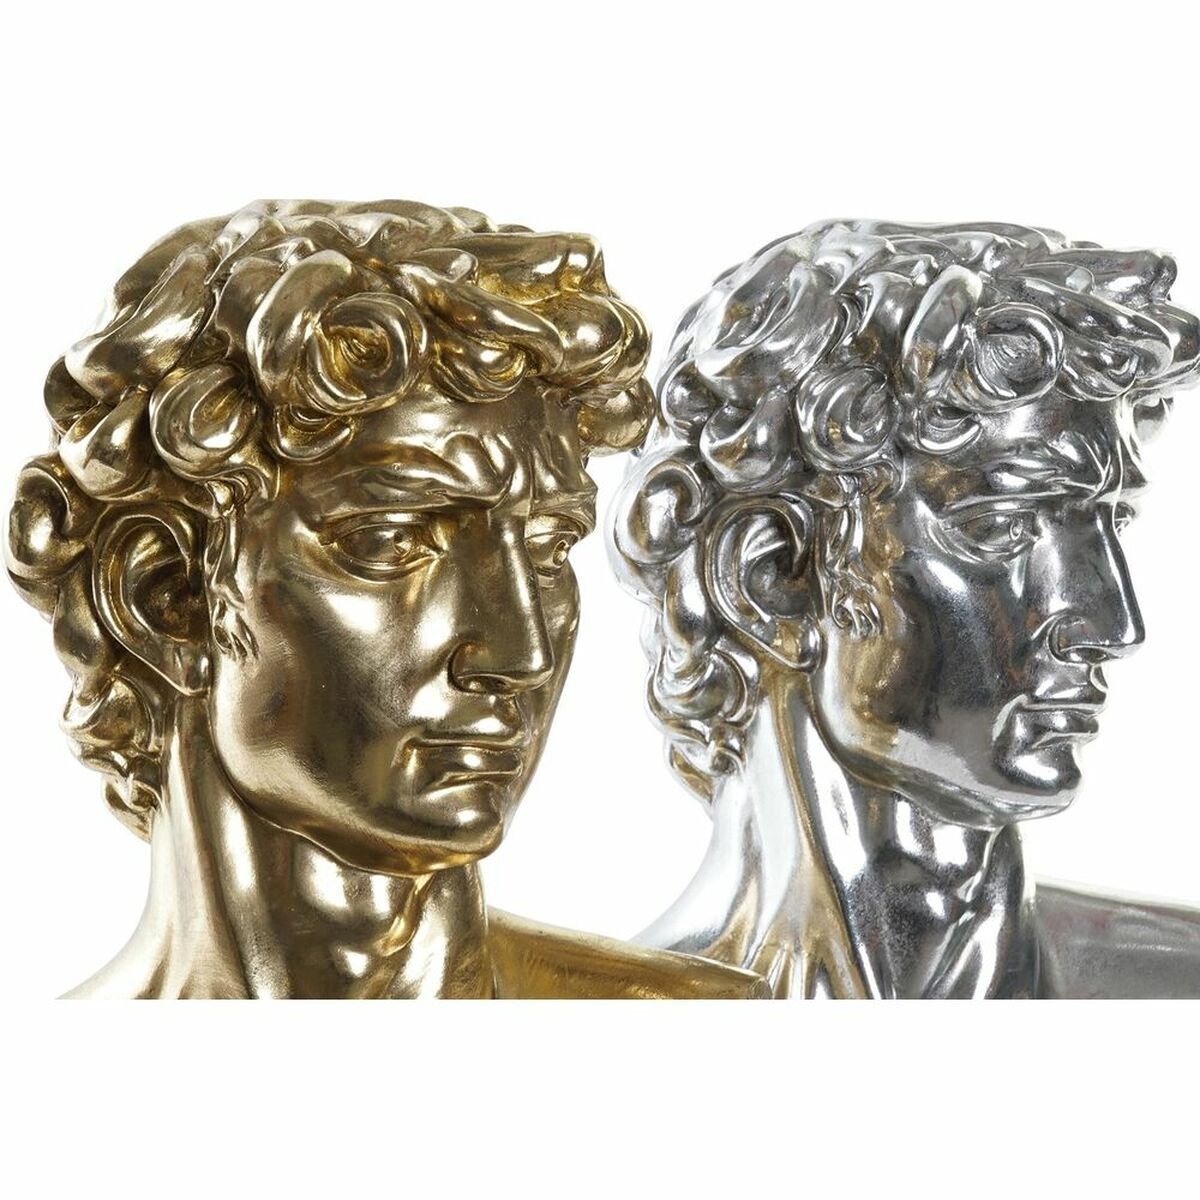 David srebro i zlato 24,5 x 17,5 x 36 cm